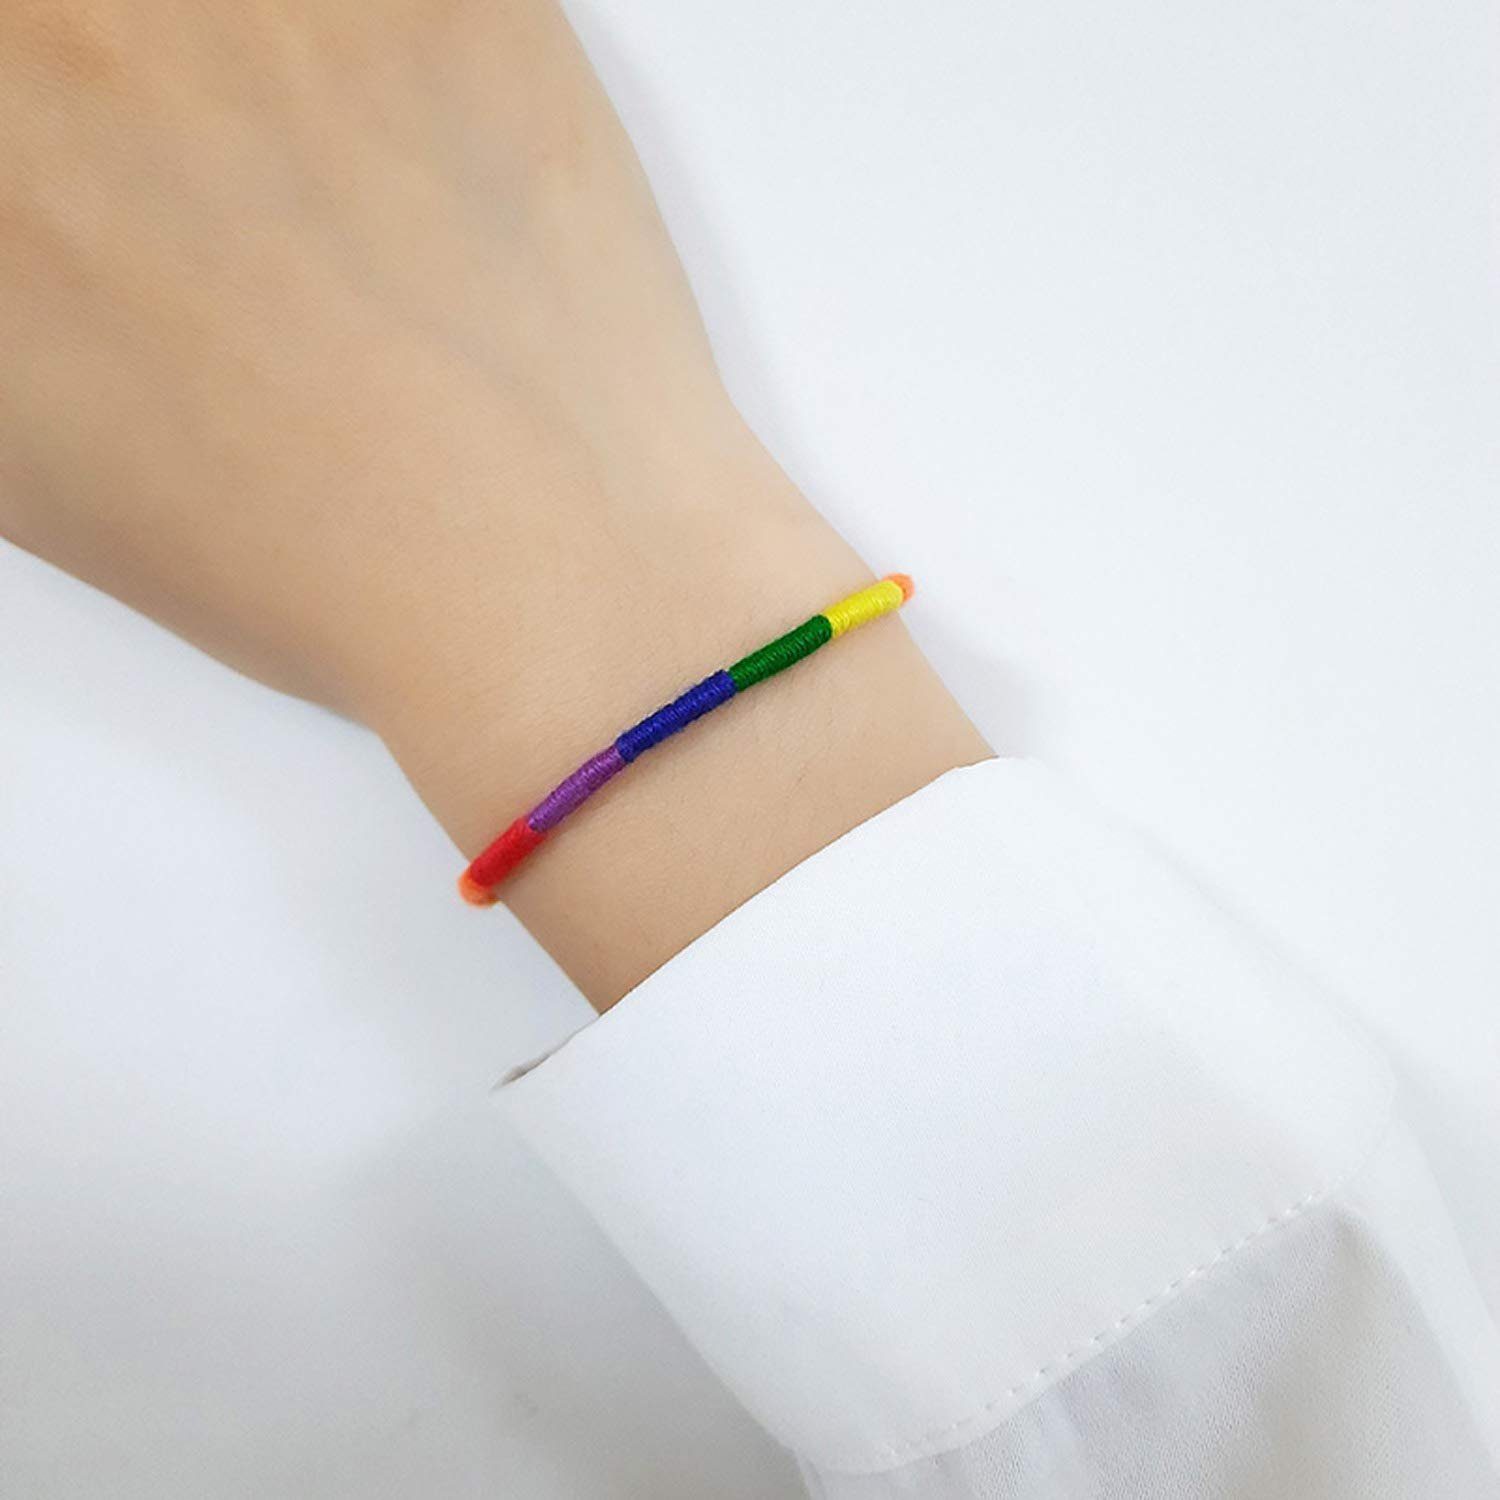 Haiaveng Freundschaftsarmband 2Pcs Gewebtes Regenbogen Freundschaftsarmband Seil einstellbar LGBTQ geflochtenes Armbänder